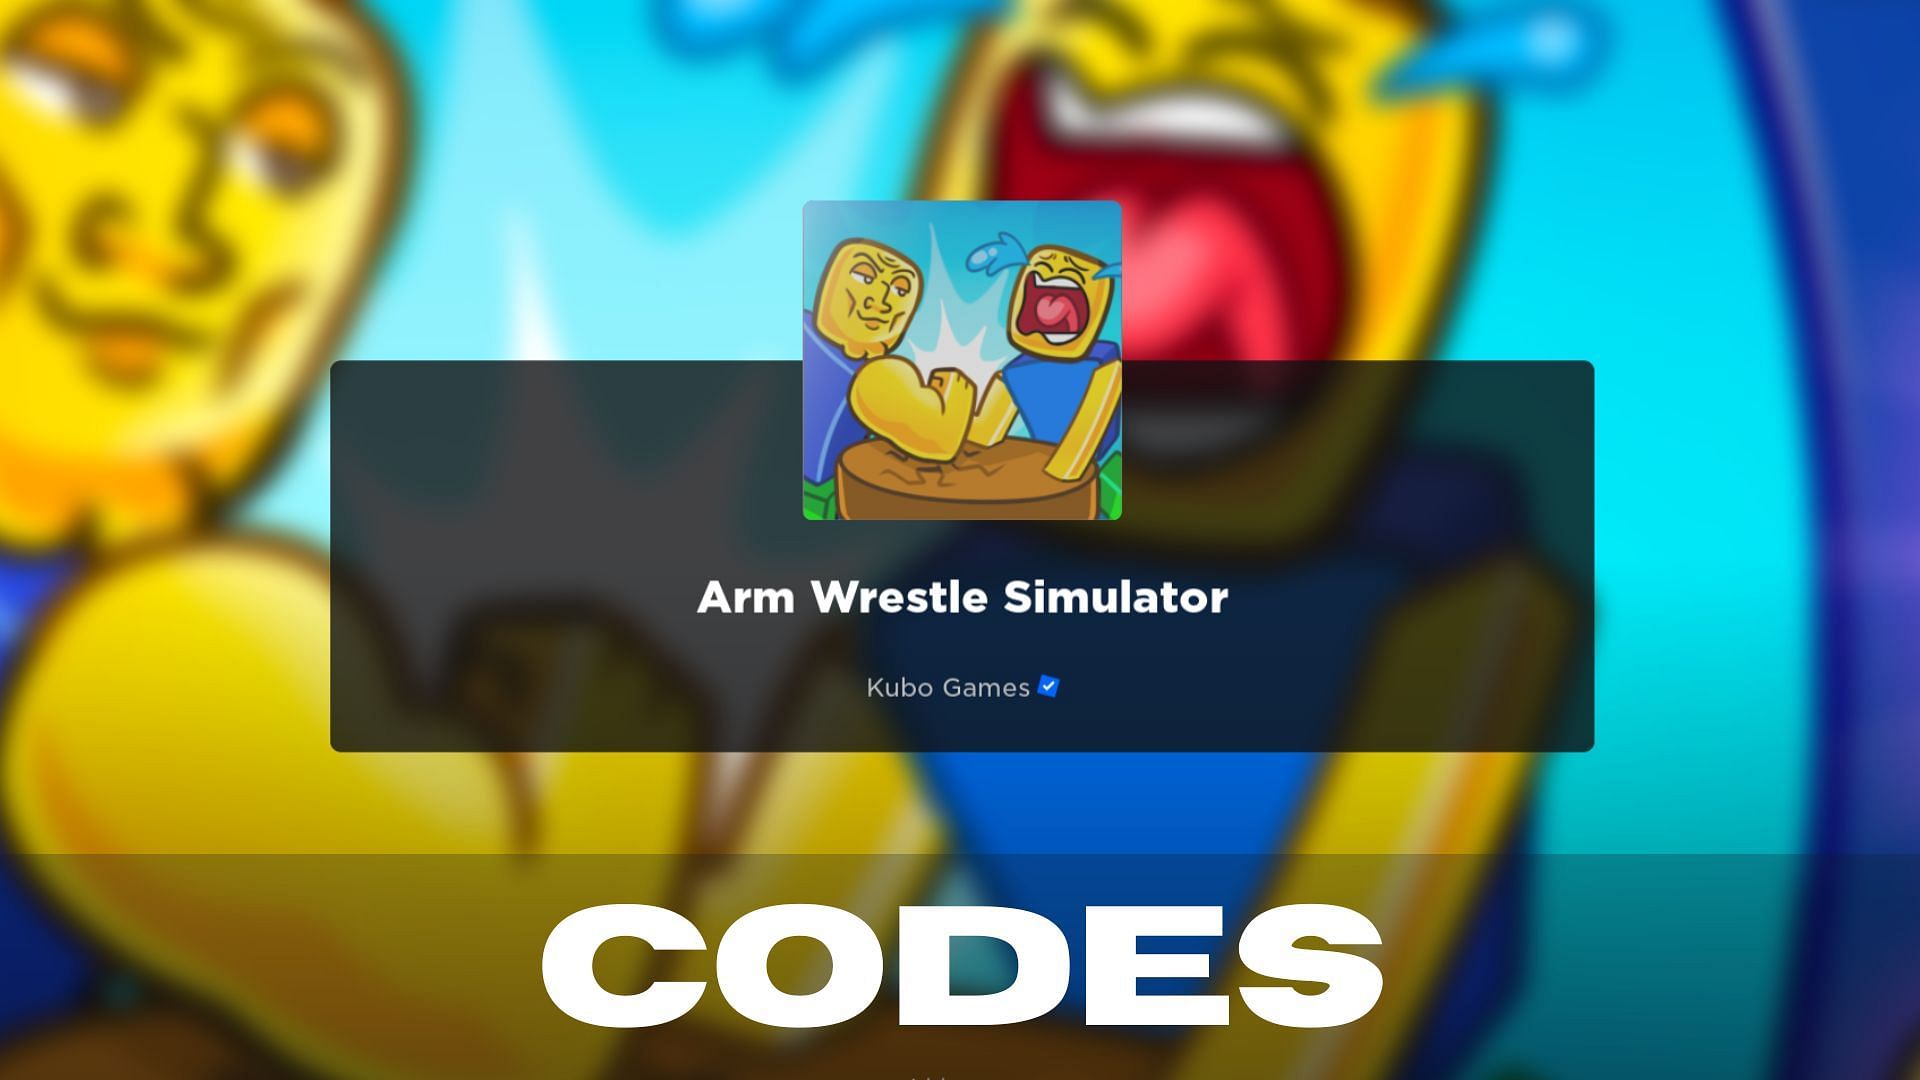 Arm Wrestle Simulator codes 